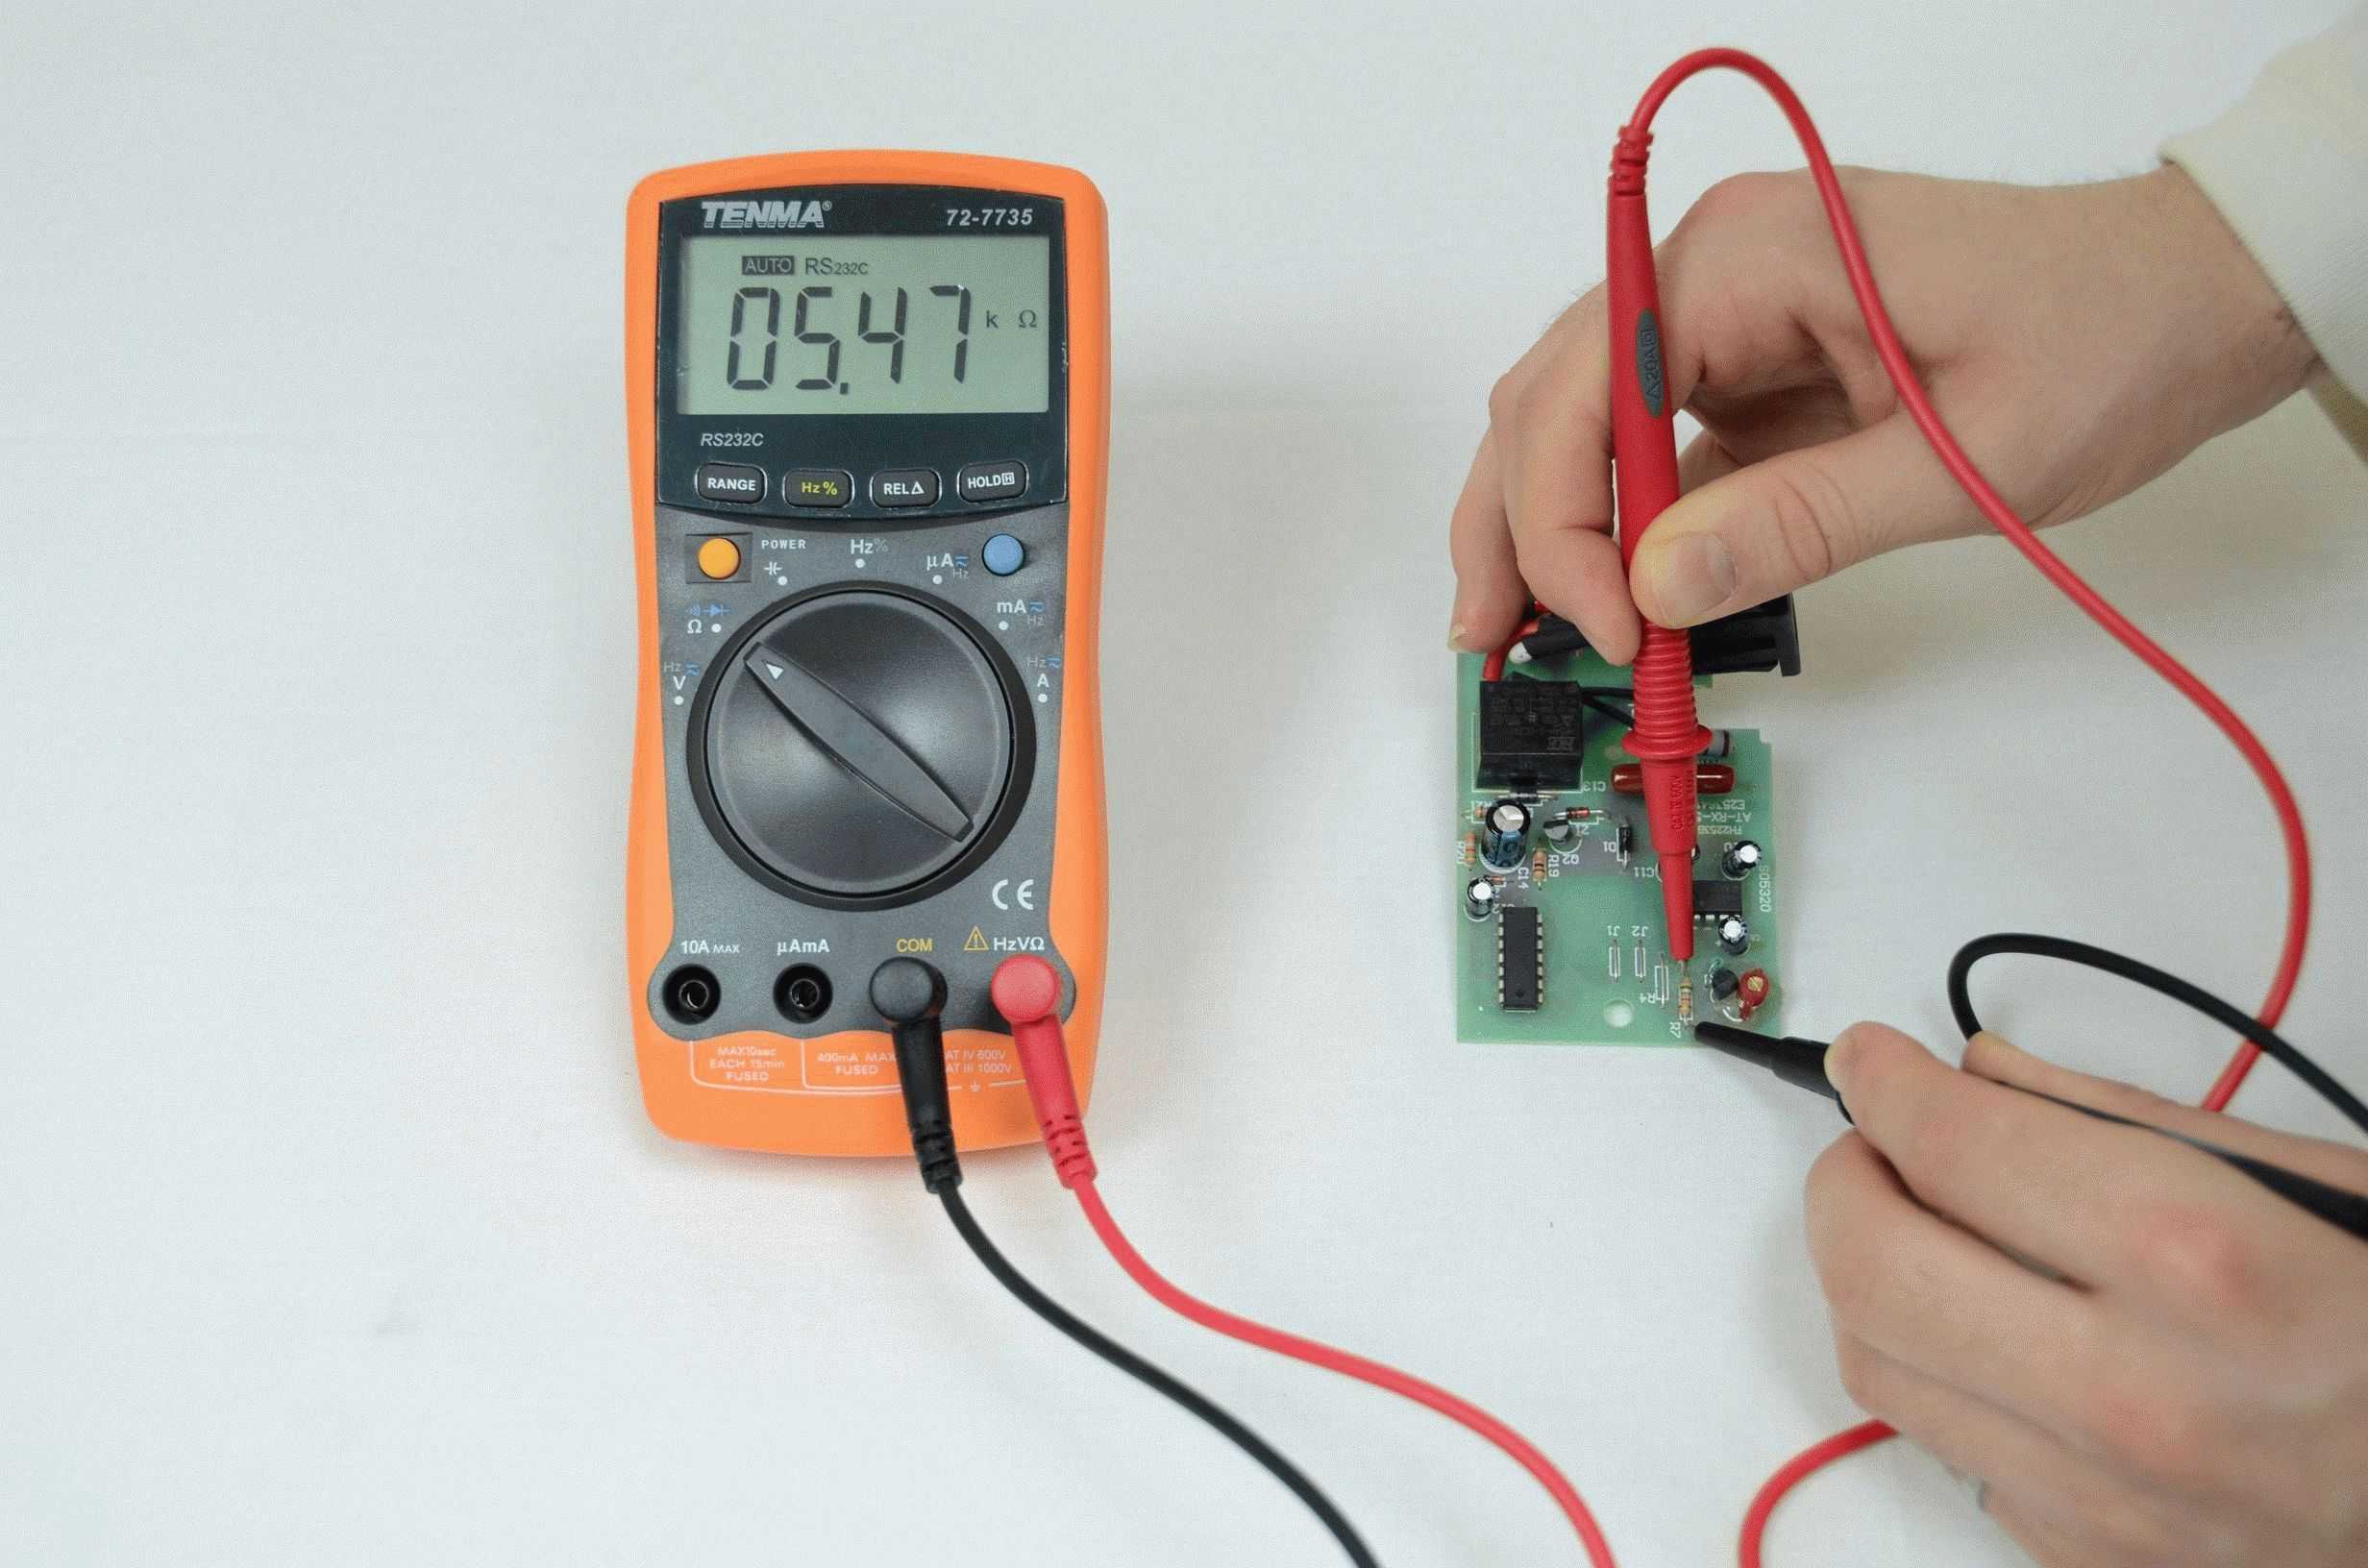 Рассмотрим ключевые вопросы, связанные с тем, как проверить обычный резистор на исправность, пользуясь тестером или мультиметром